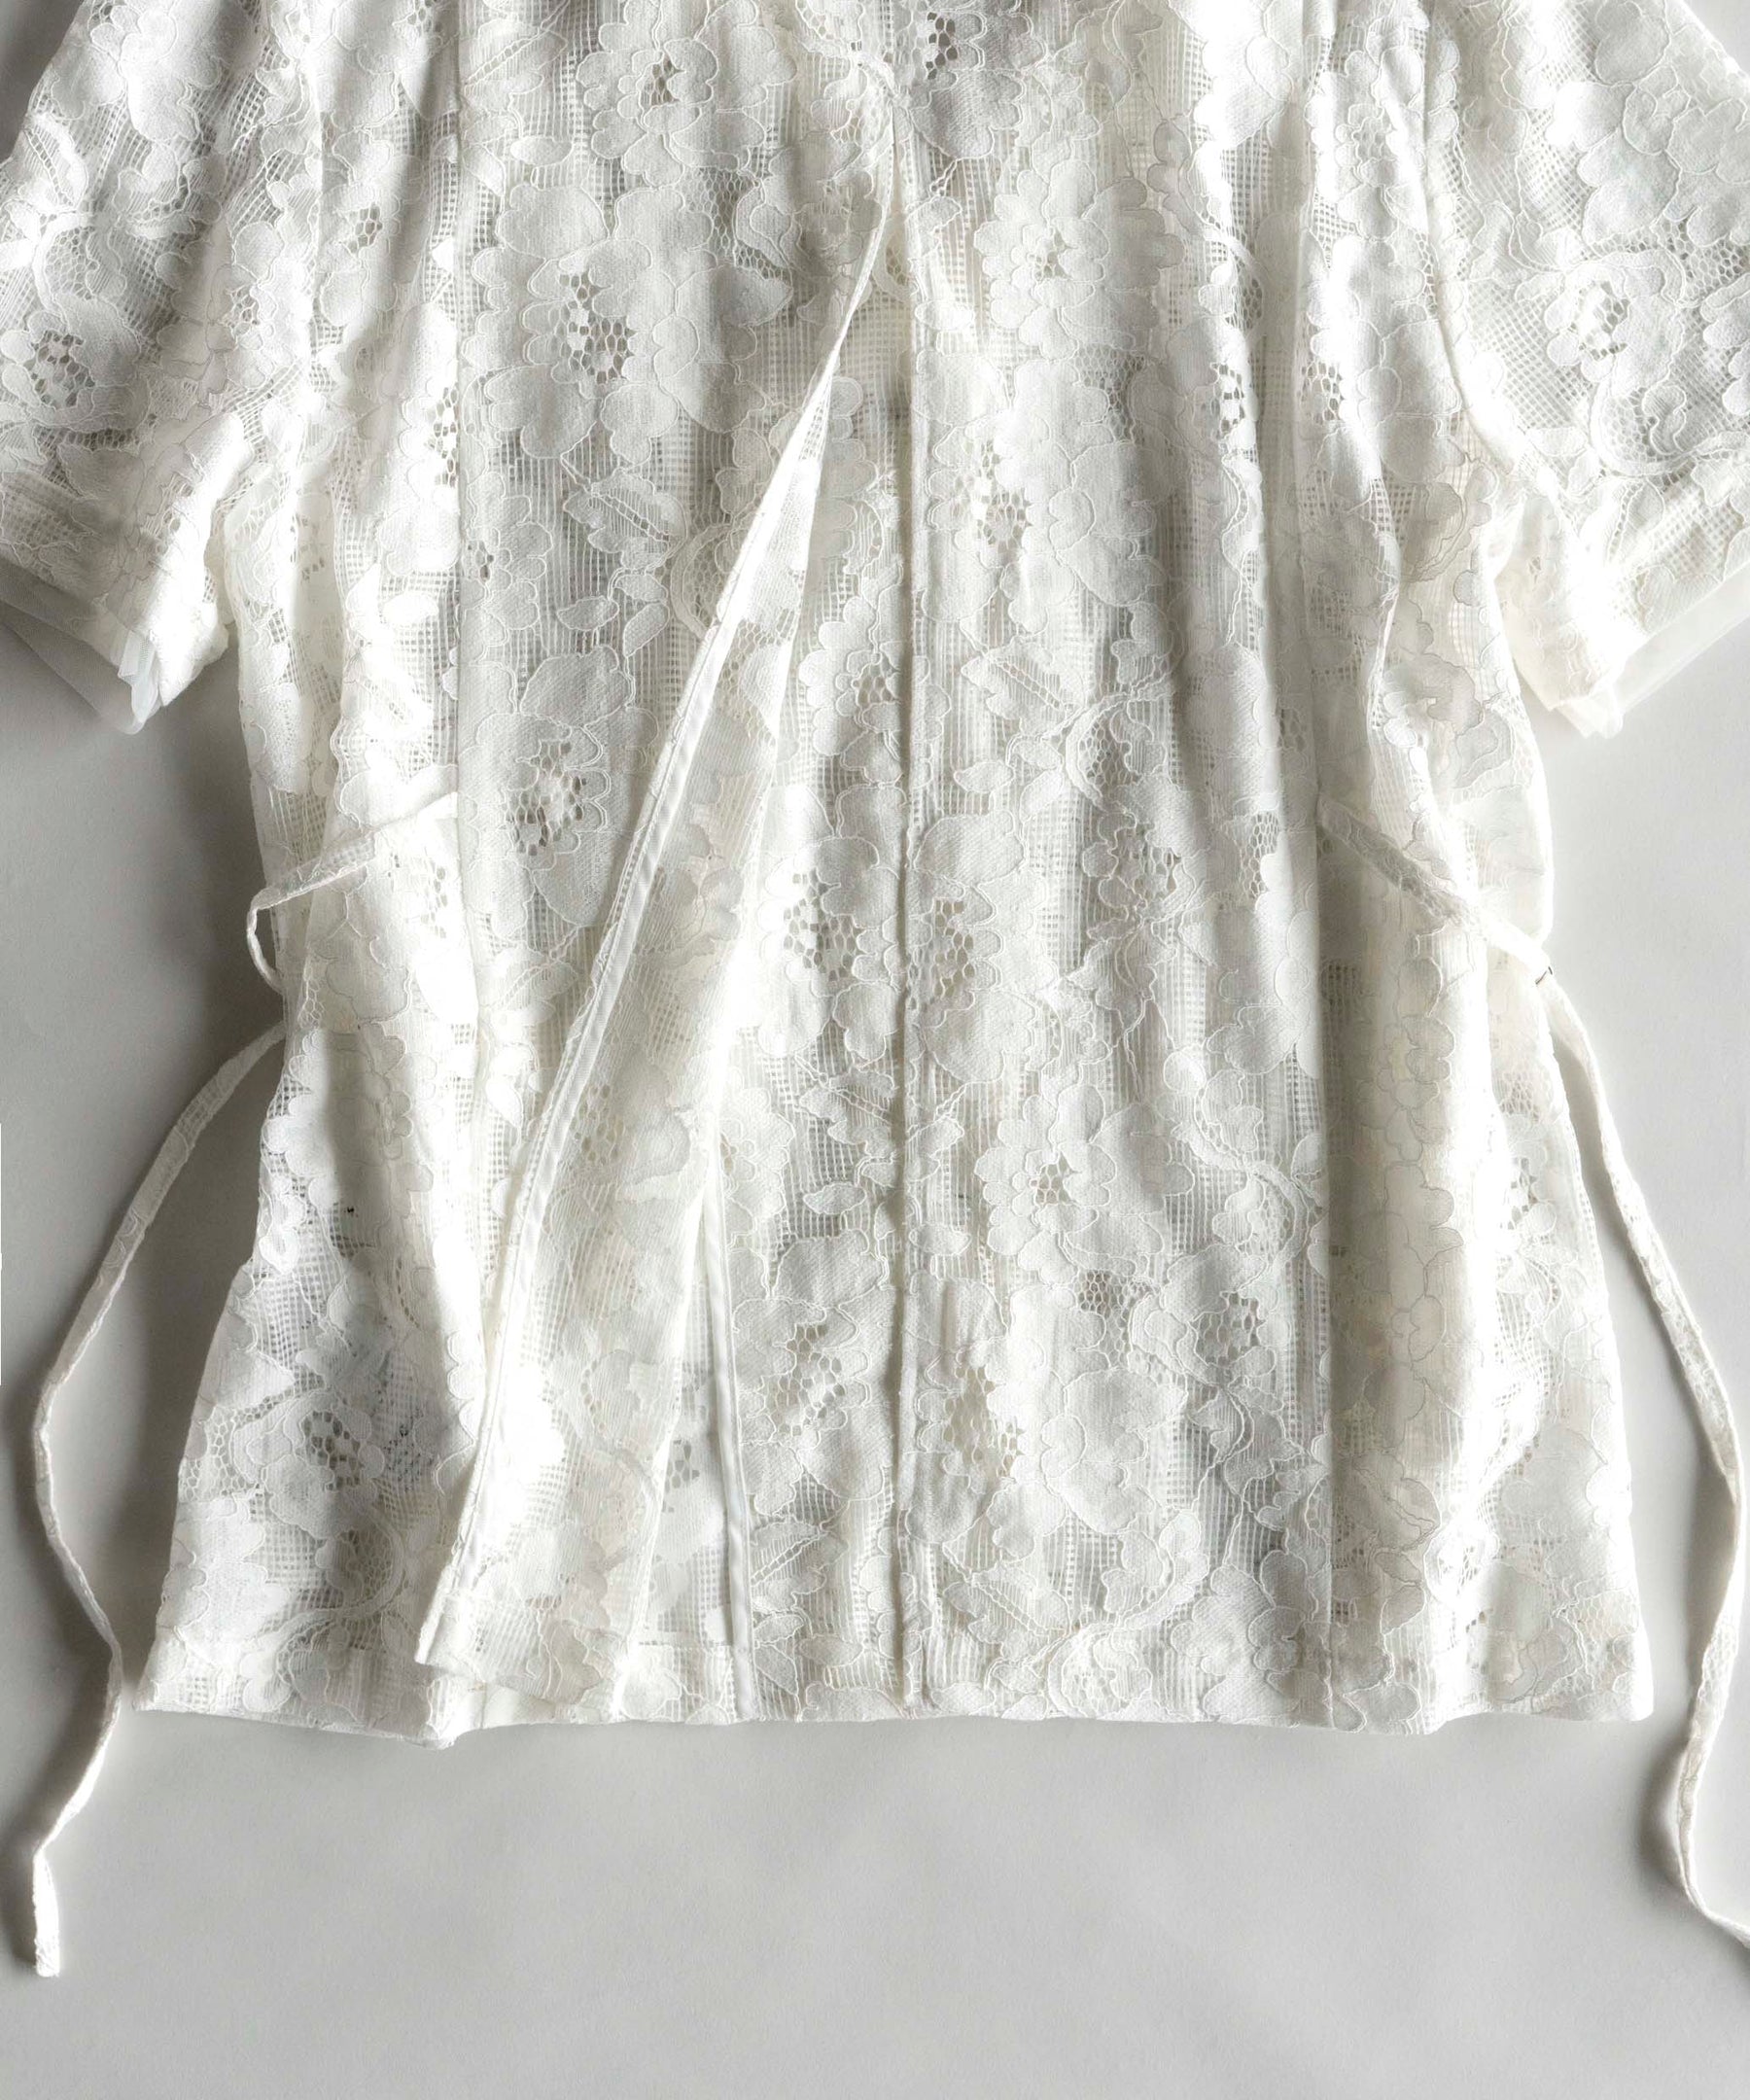 【SALE】Lace Half Sleeve Jacket